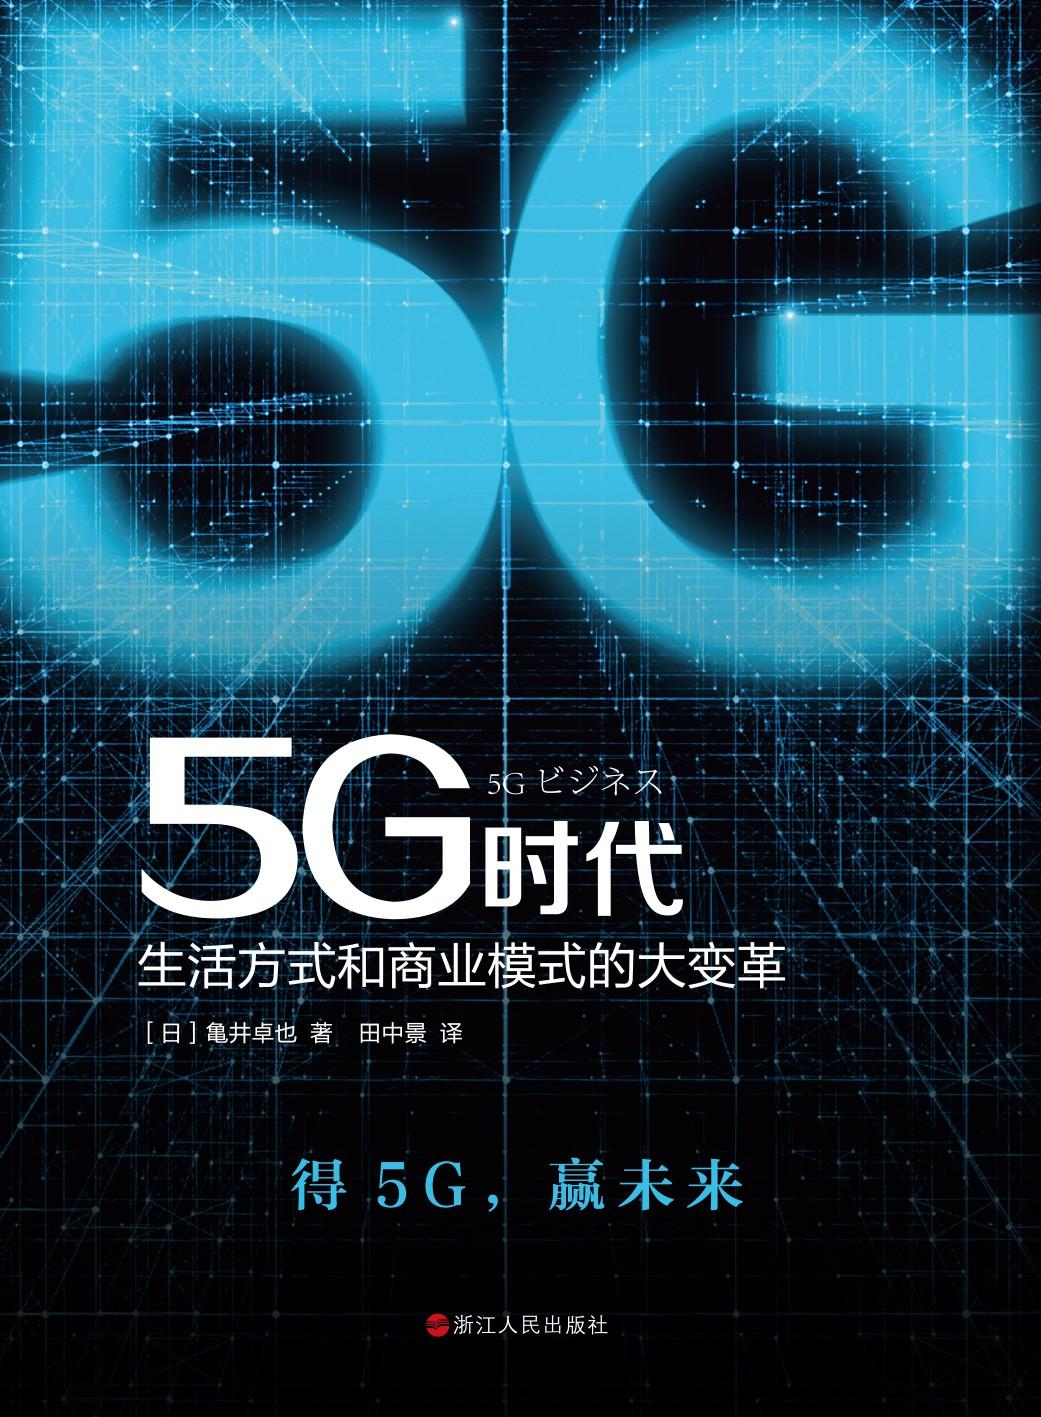 粤港澳地区 5G 网络覆盖迅速，引领生活方式变革  第3张